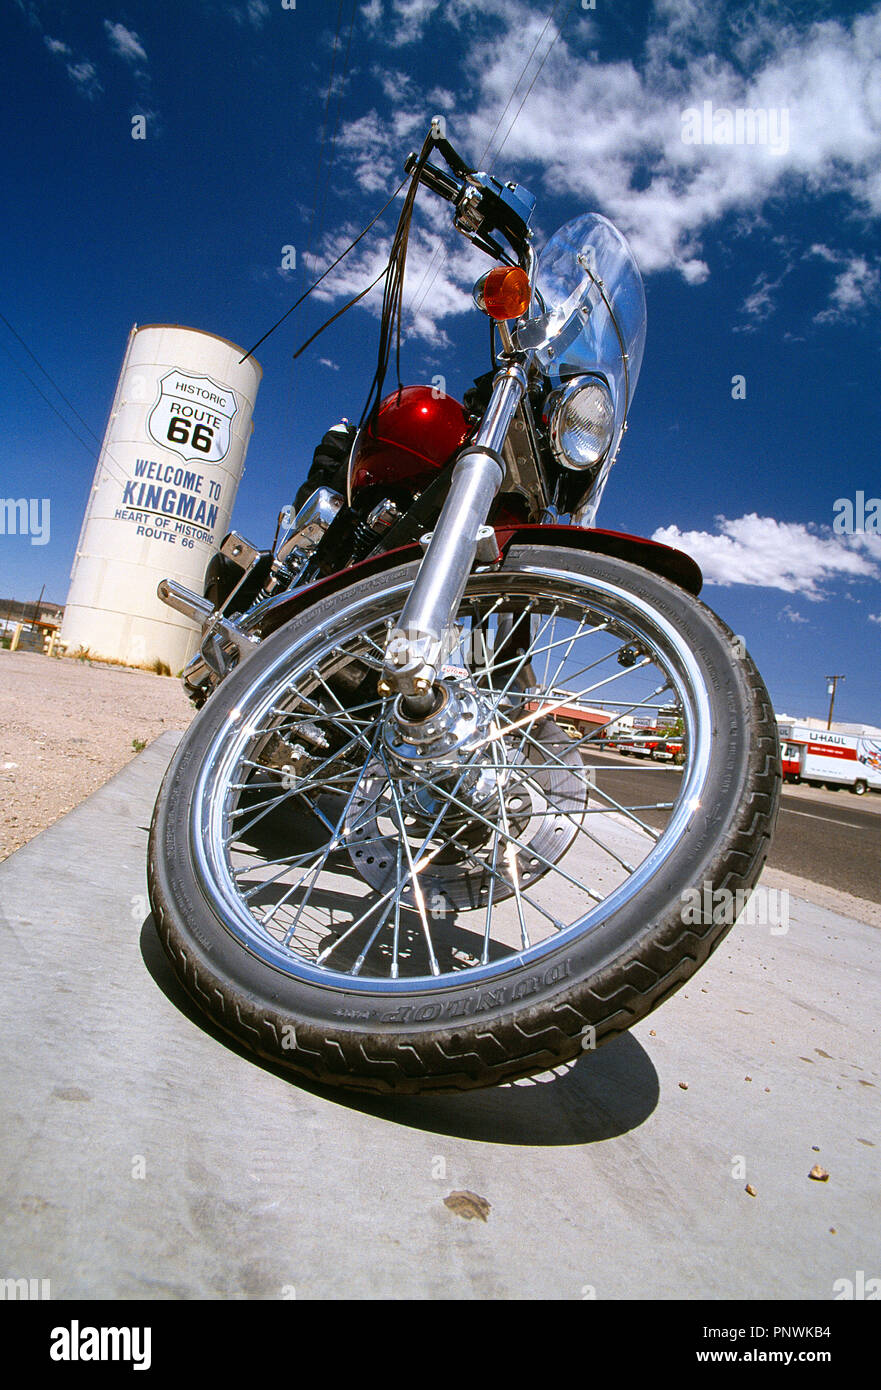 Stati Uniti d'America. In Arizona, Kingman, Route 66. Basso punto di vista ravvicinata di una classica motocicletta Harley Davidson. Foto Stock